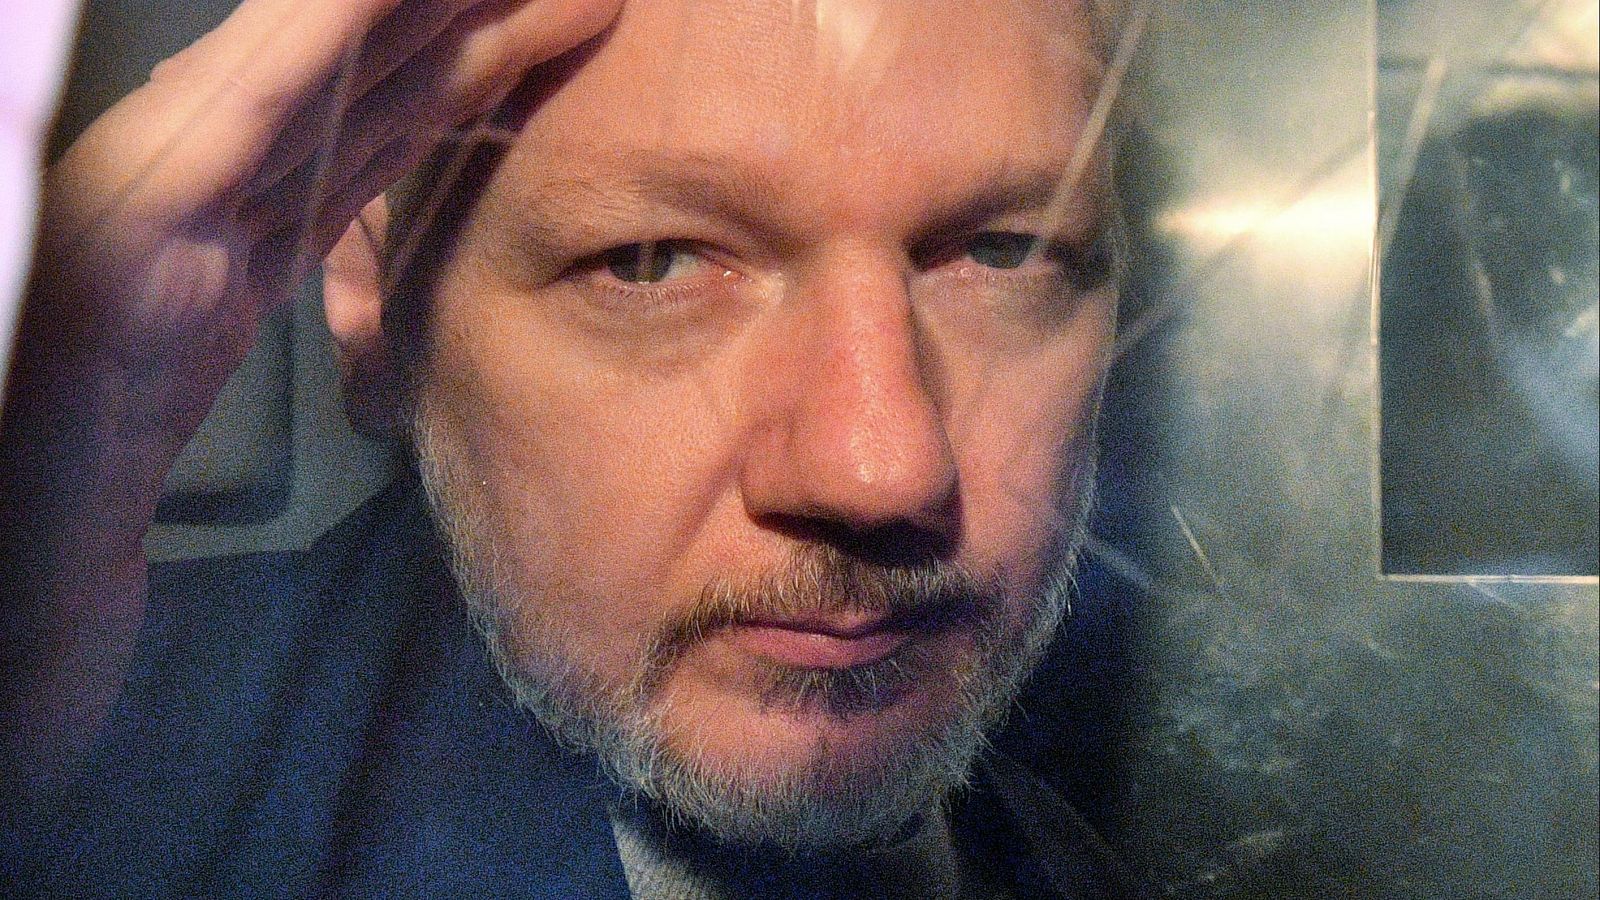 La Justicia británica decide si autoriza la extradición de Assange a Estados Unidos